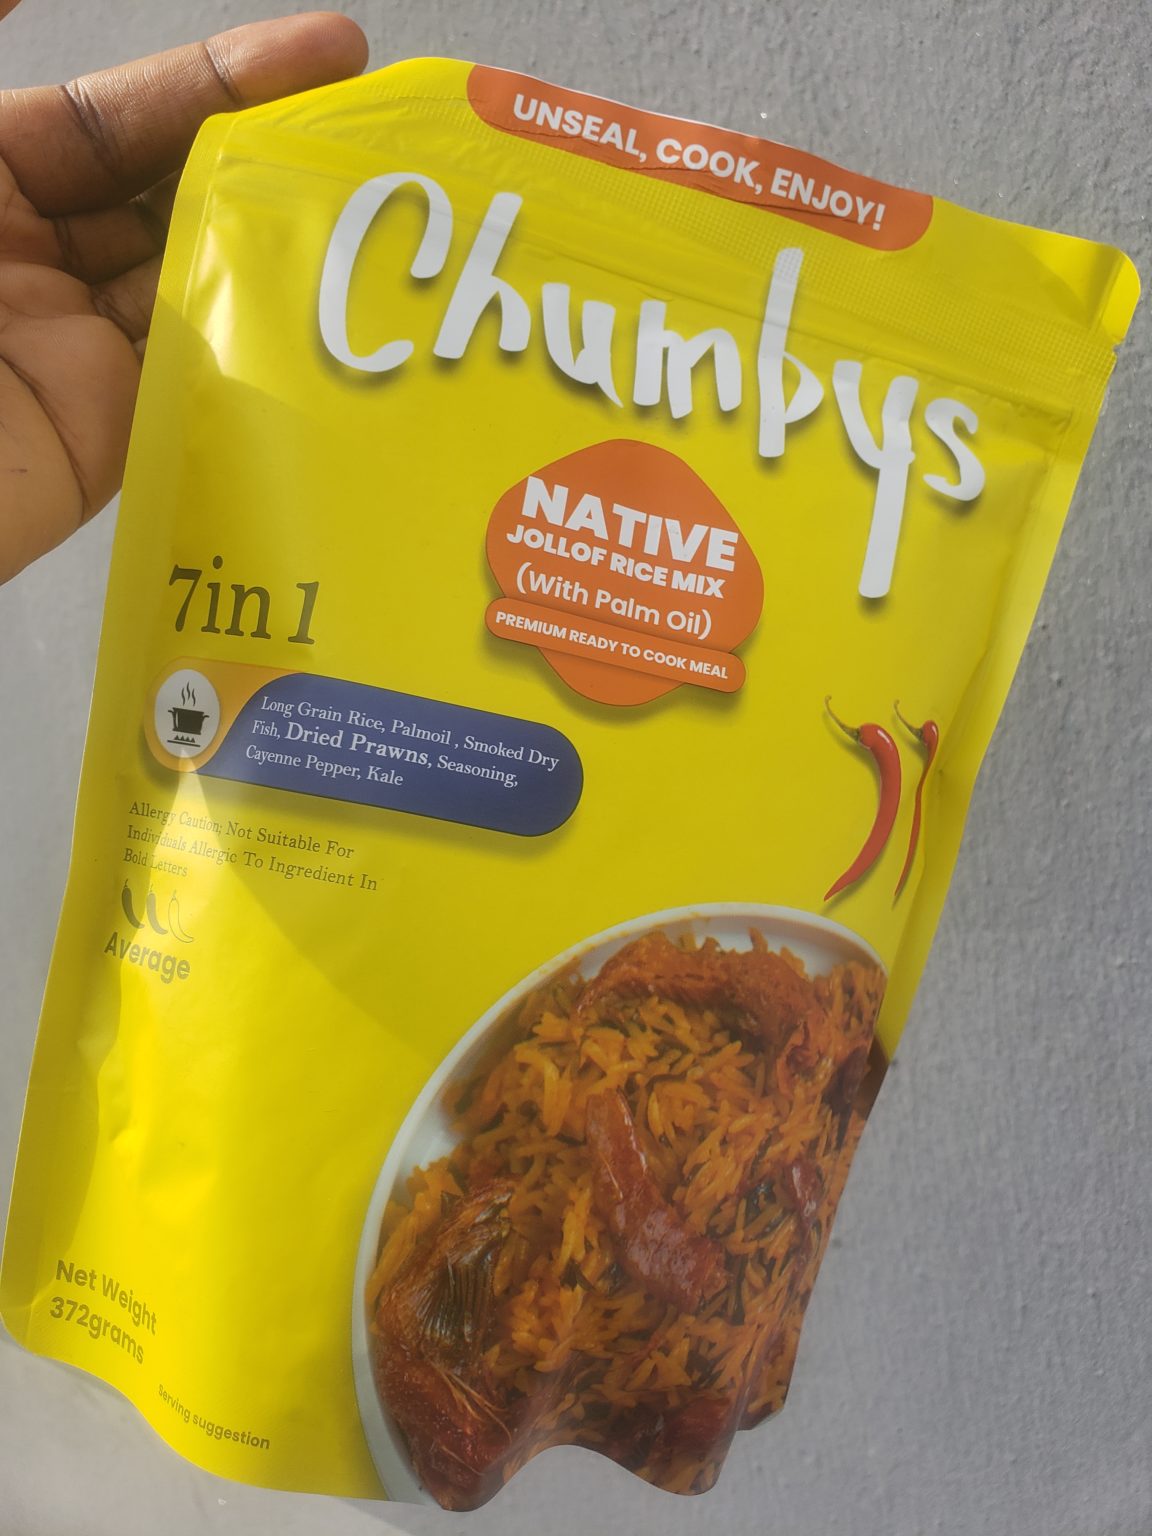 Buy Chumbys native jollof rice mix from themarketfoodshop.com